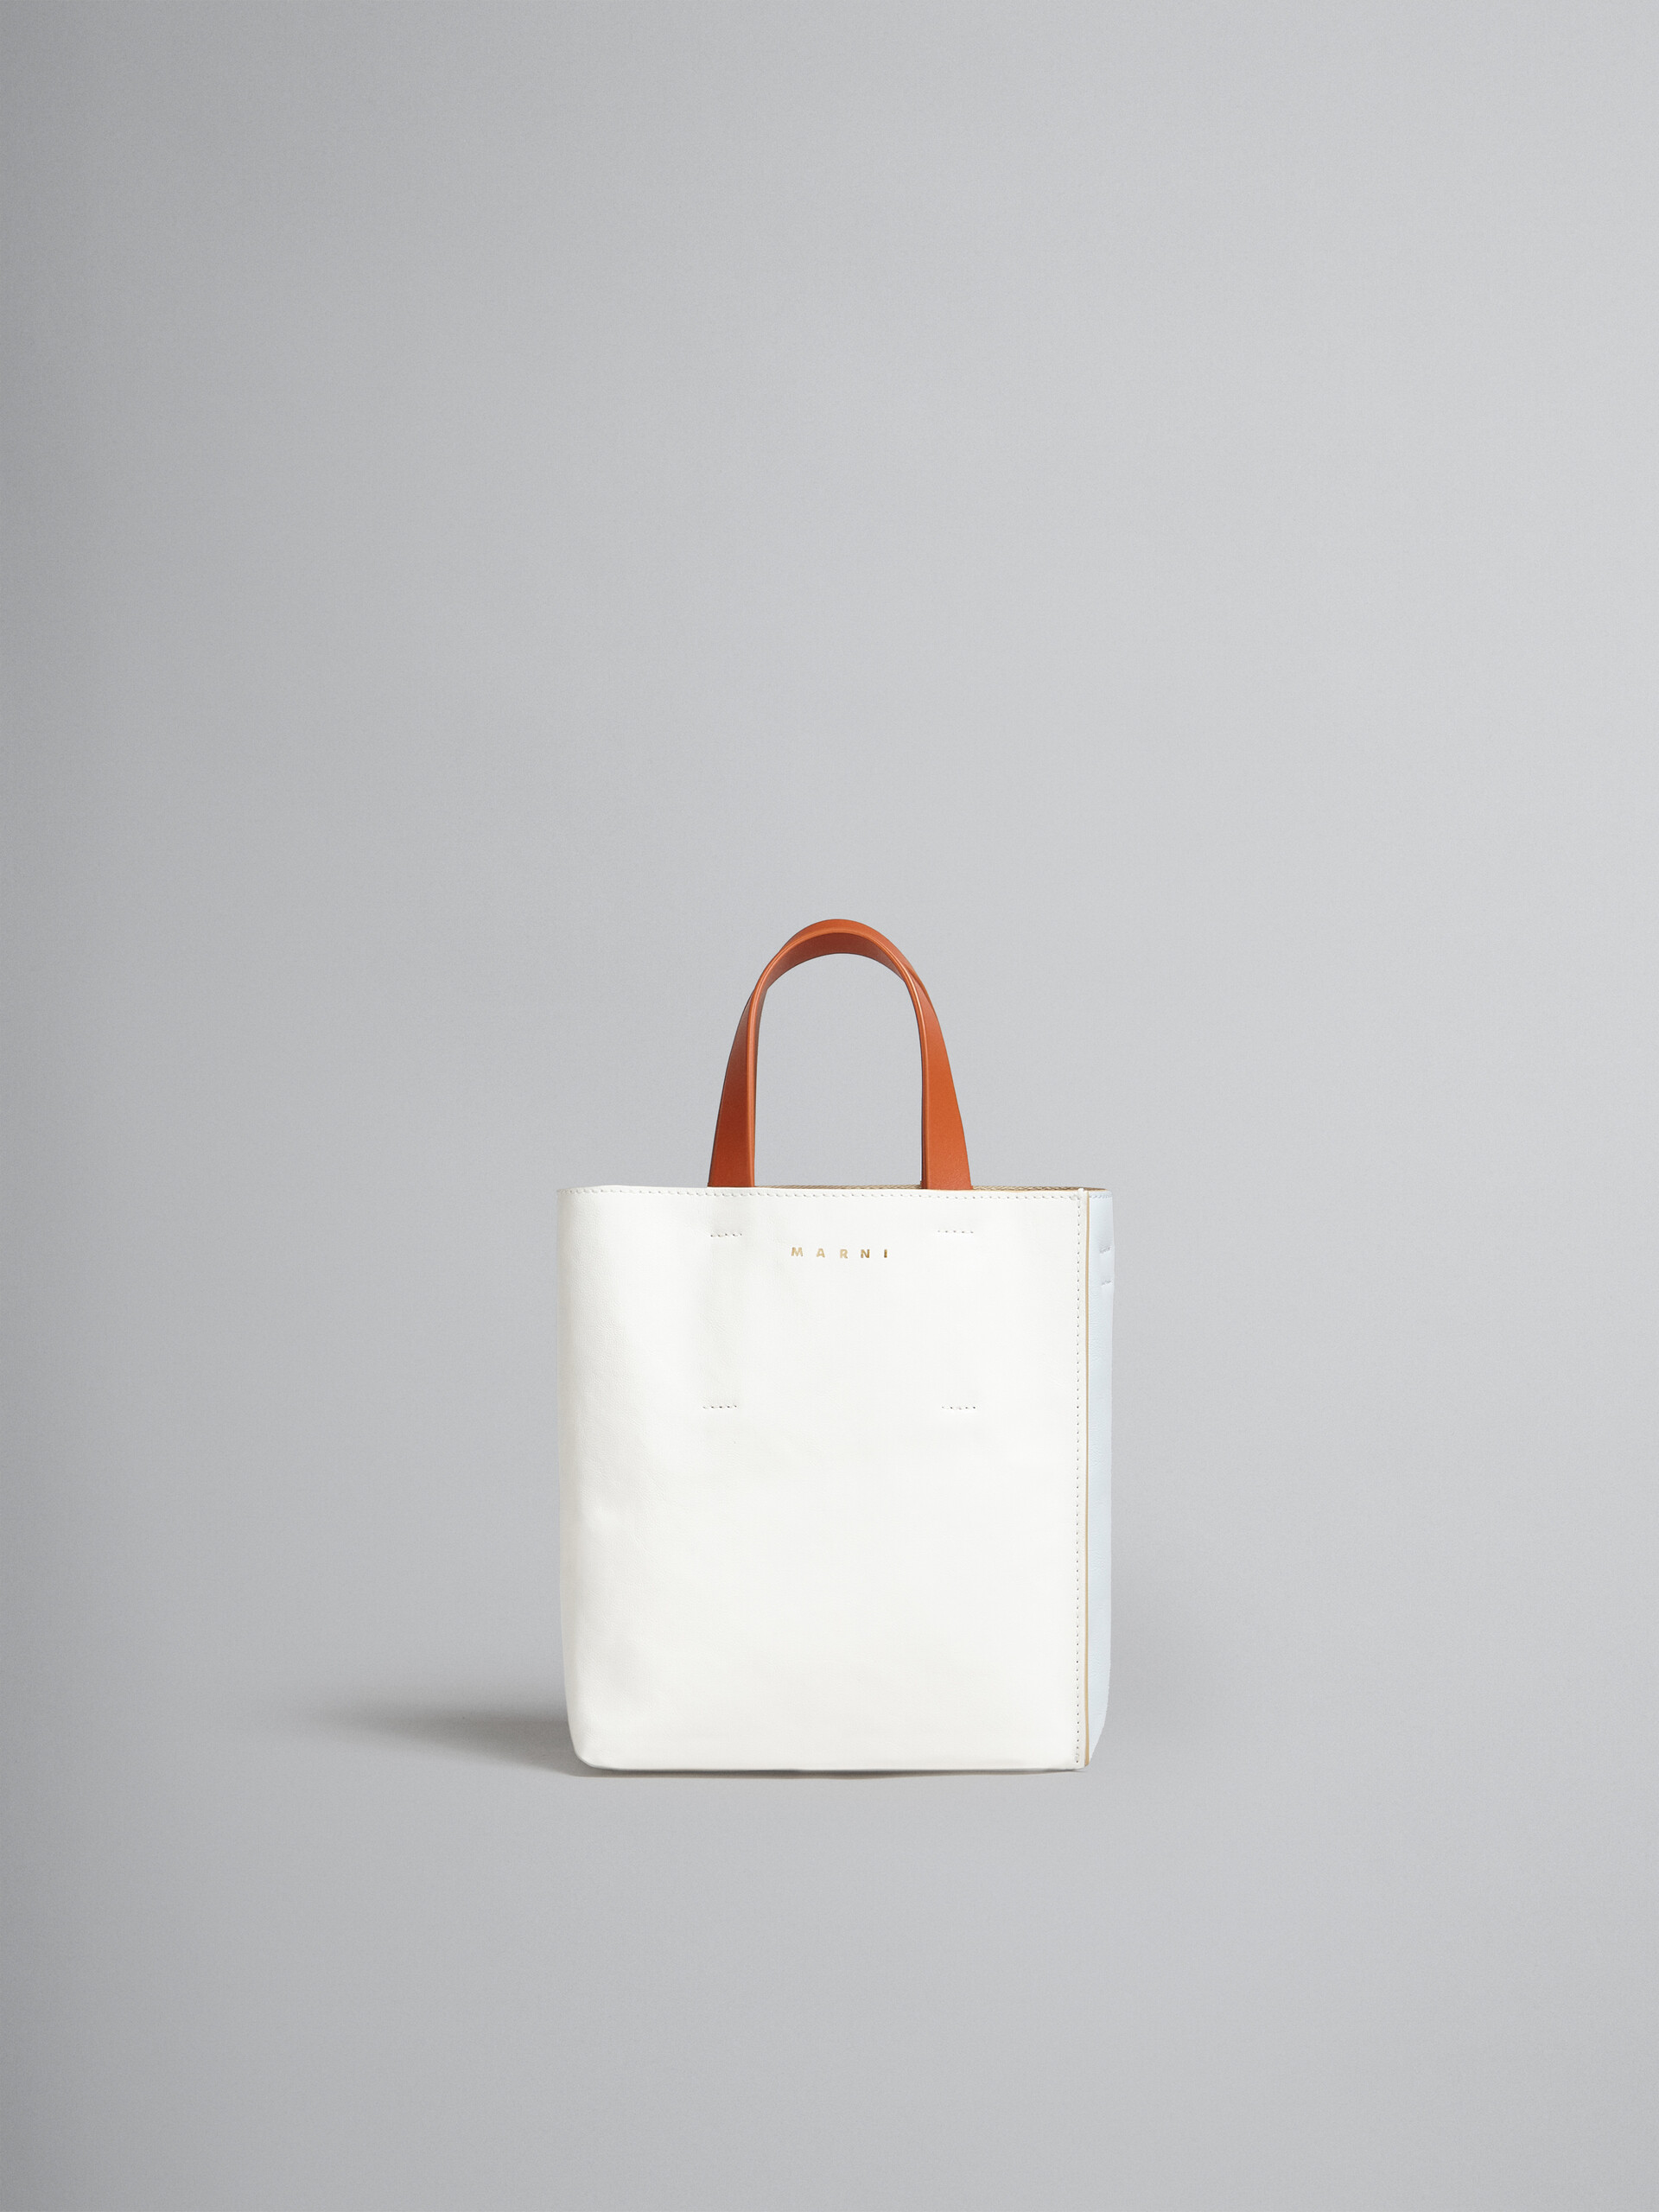 Mini-Tasche Museo Soft aus Leder in Grau, Schwarz und Rot - Shopper - Image 1